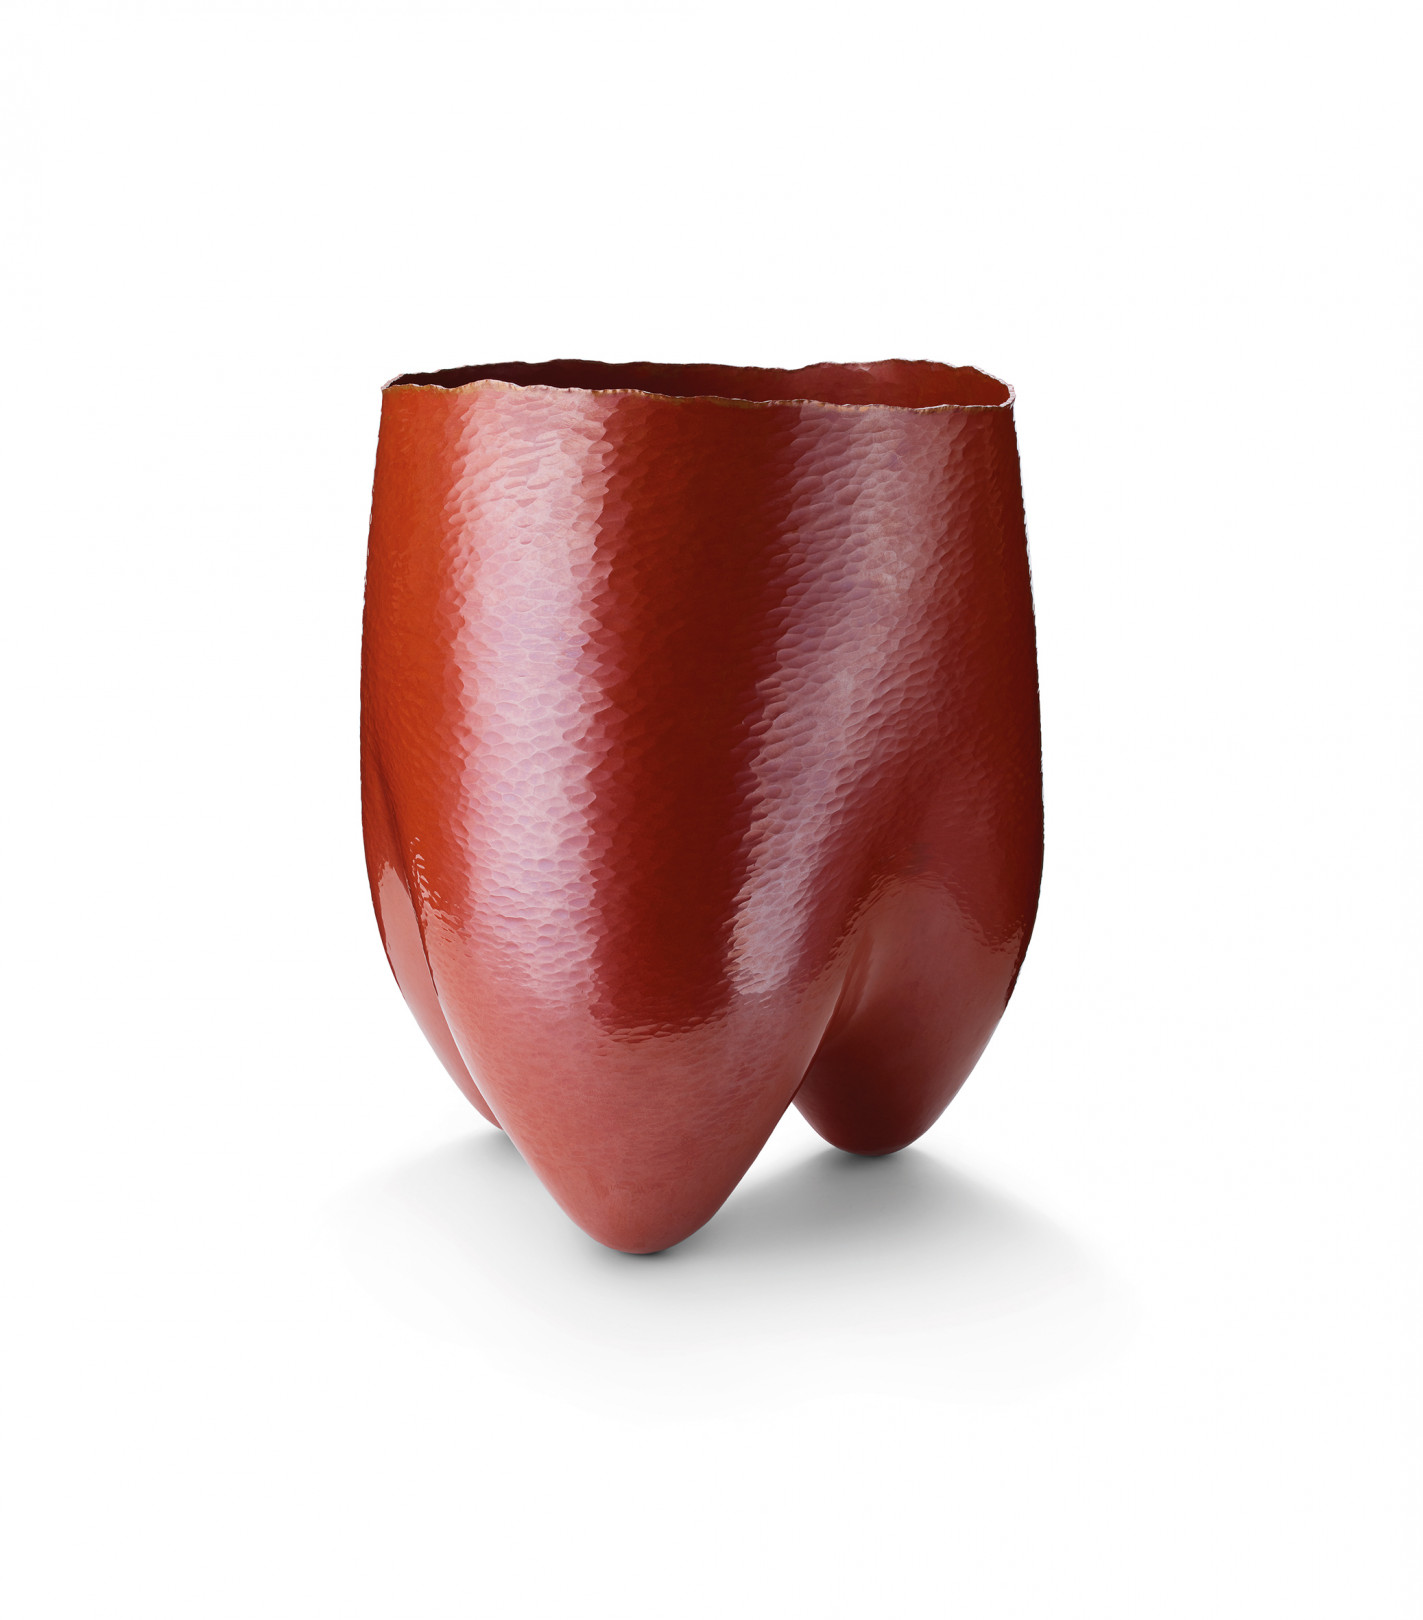 井尾鉱一, 日本 『Three Legs Vase』煮色仕上げの銅、165 x 170 x 245 mm 2018年